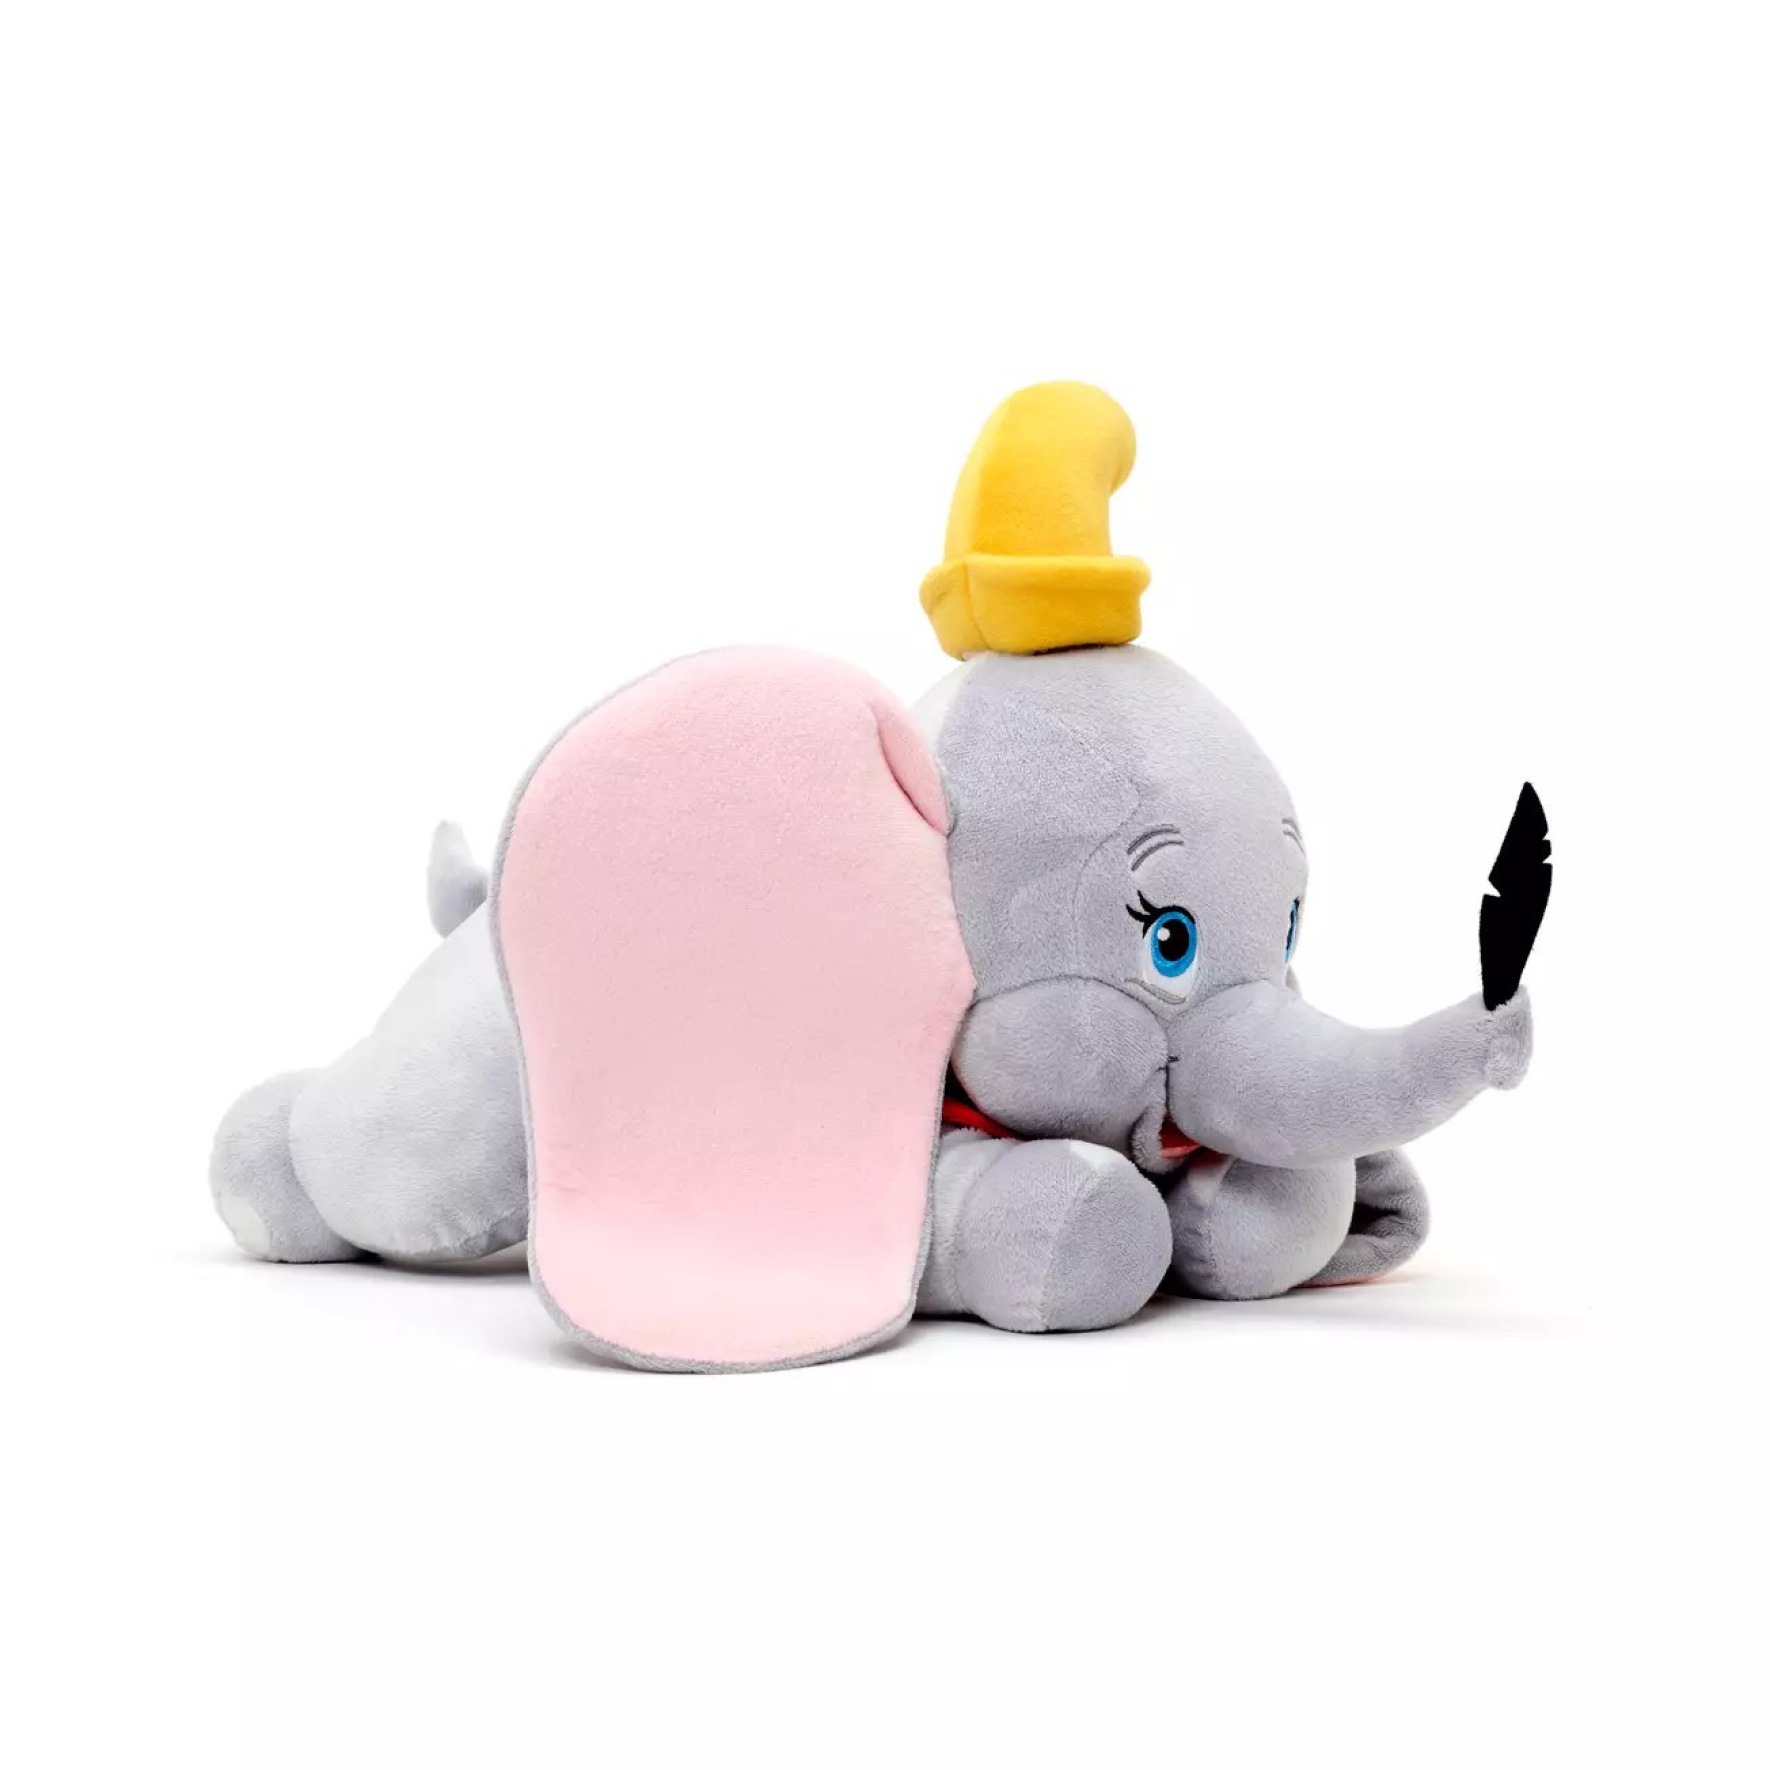  عروسک دامبو Disney Store Flying Dumbo Soft Toy 